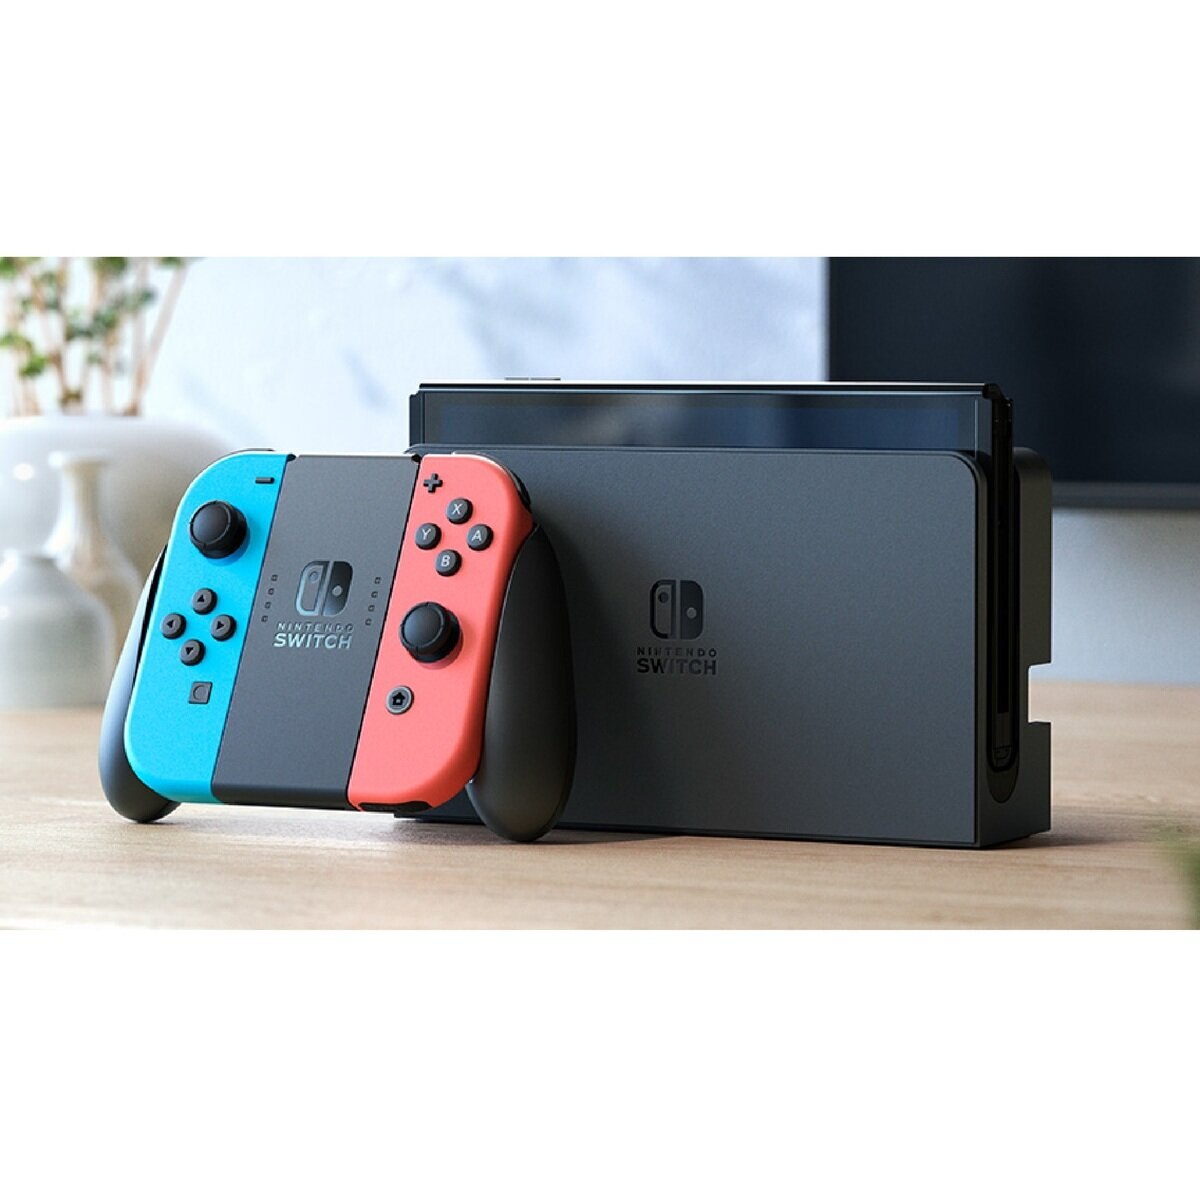 Nintendo Switch (有機ELモデル) ネオンブルー・ネオンレッド | Costco 